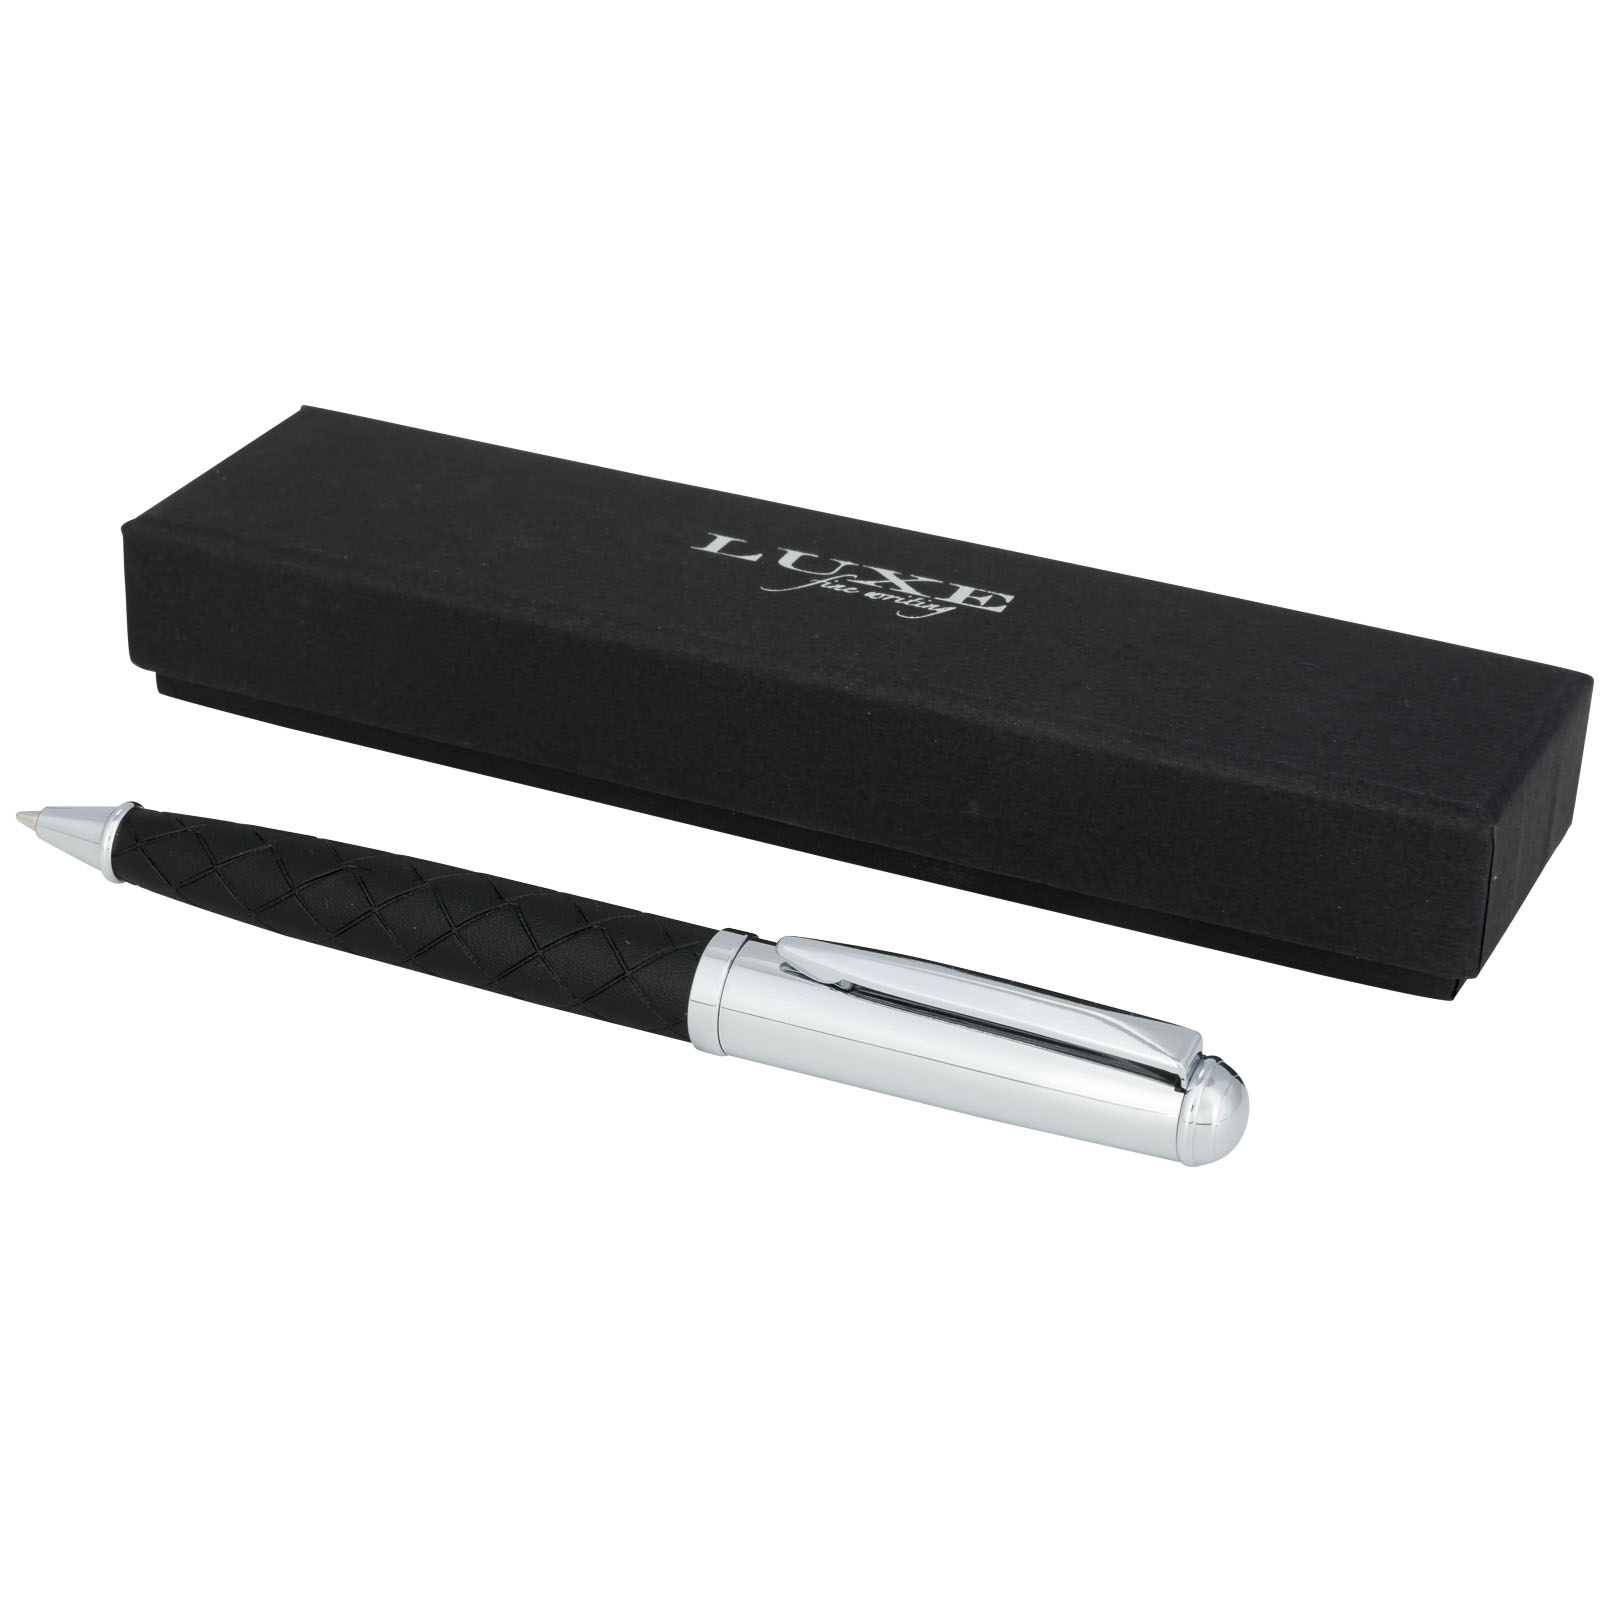 Kovové kuličkové pero Luxe TOWER s koženkovým úchopem - solid black / silver